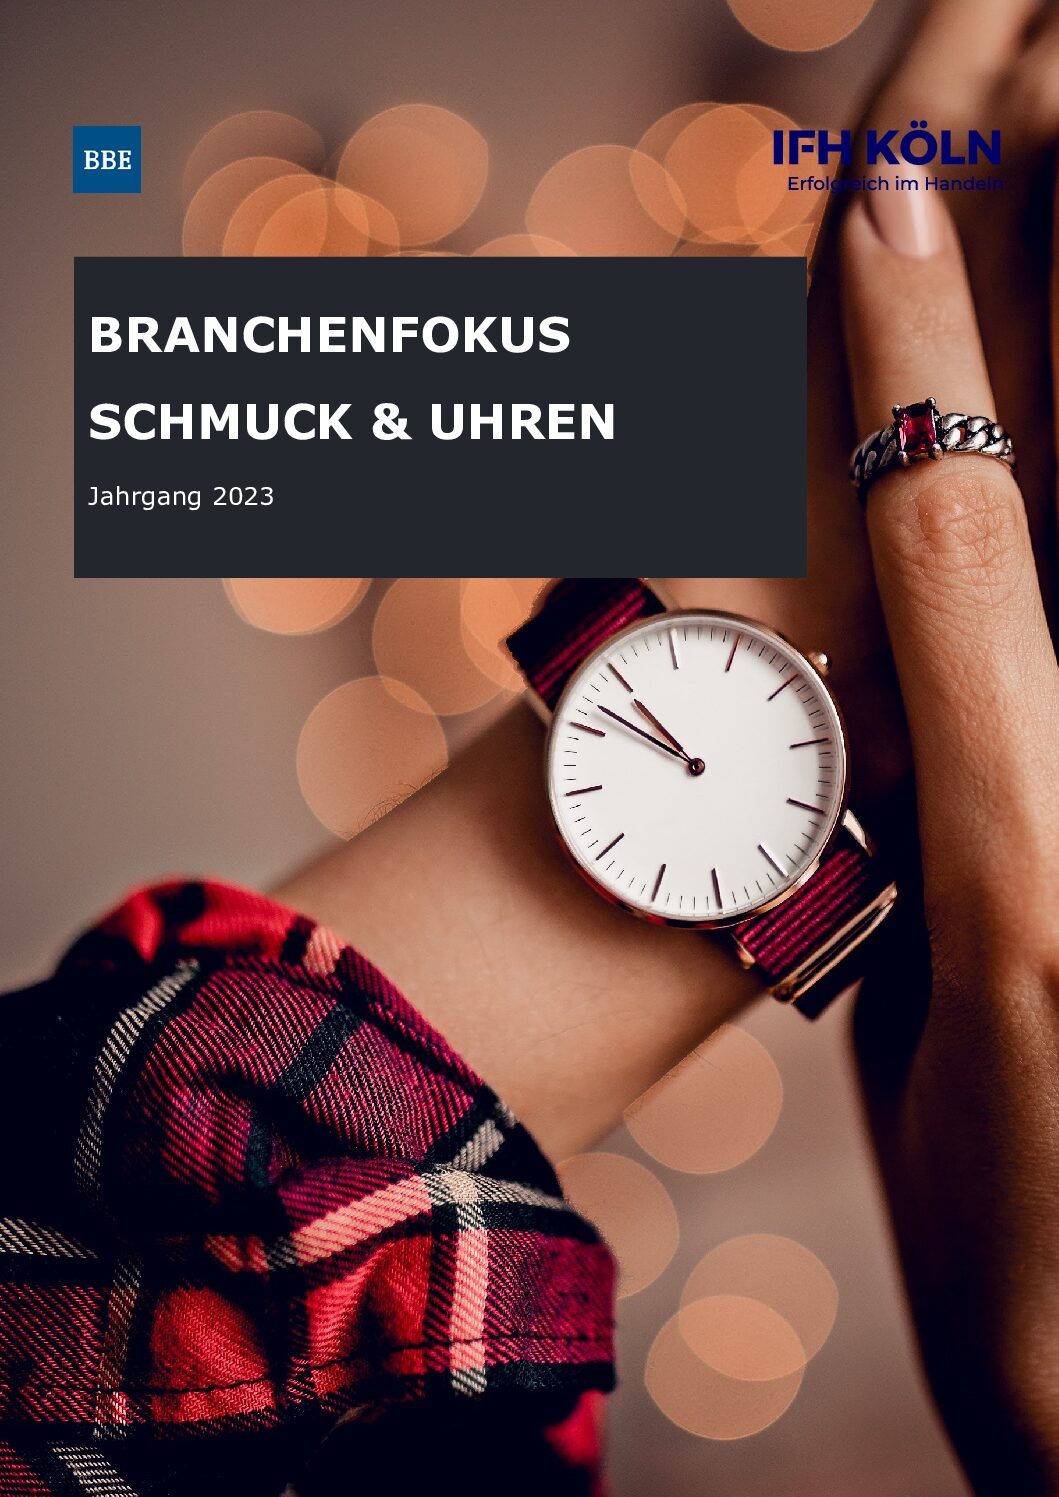 Branchenfokus Schmuck & Uhren 2023 - IFH KÖLN